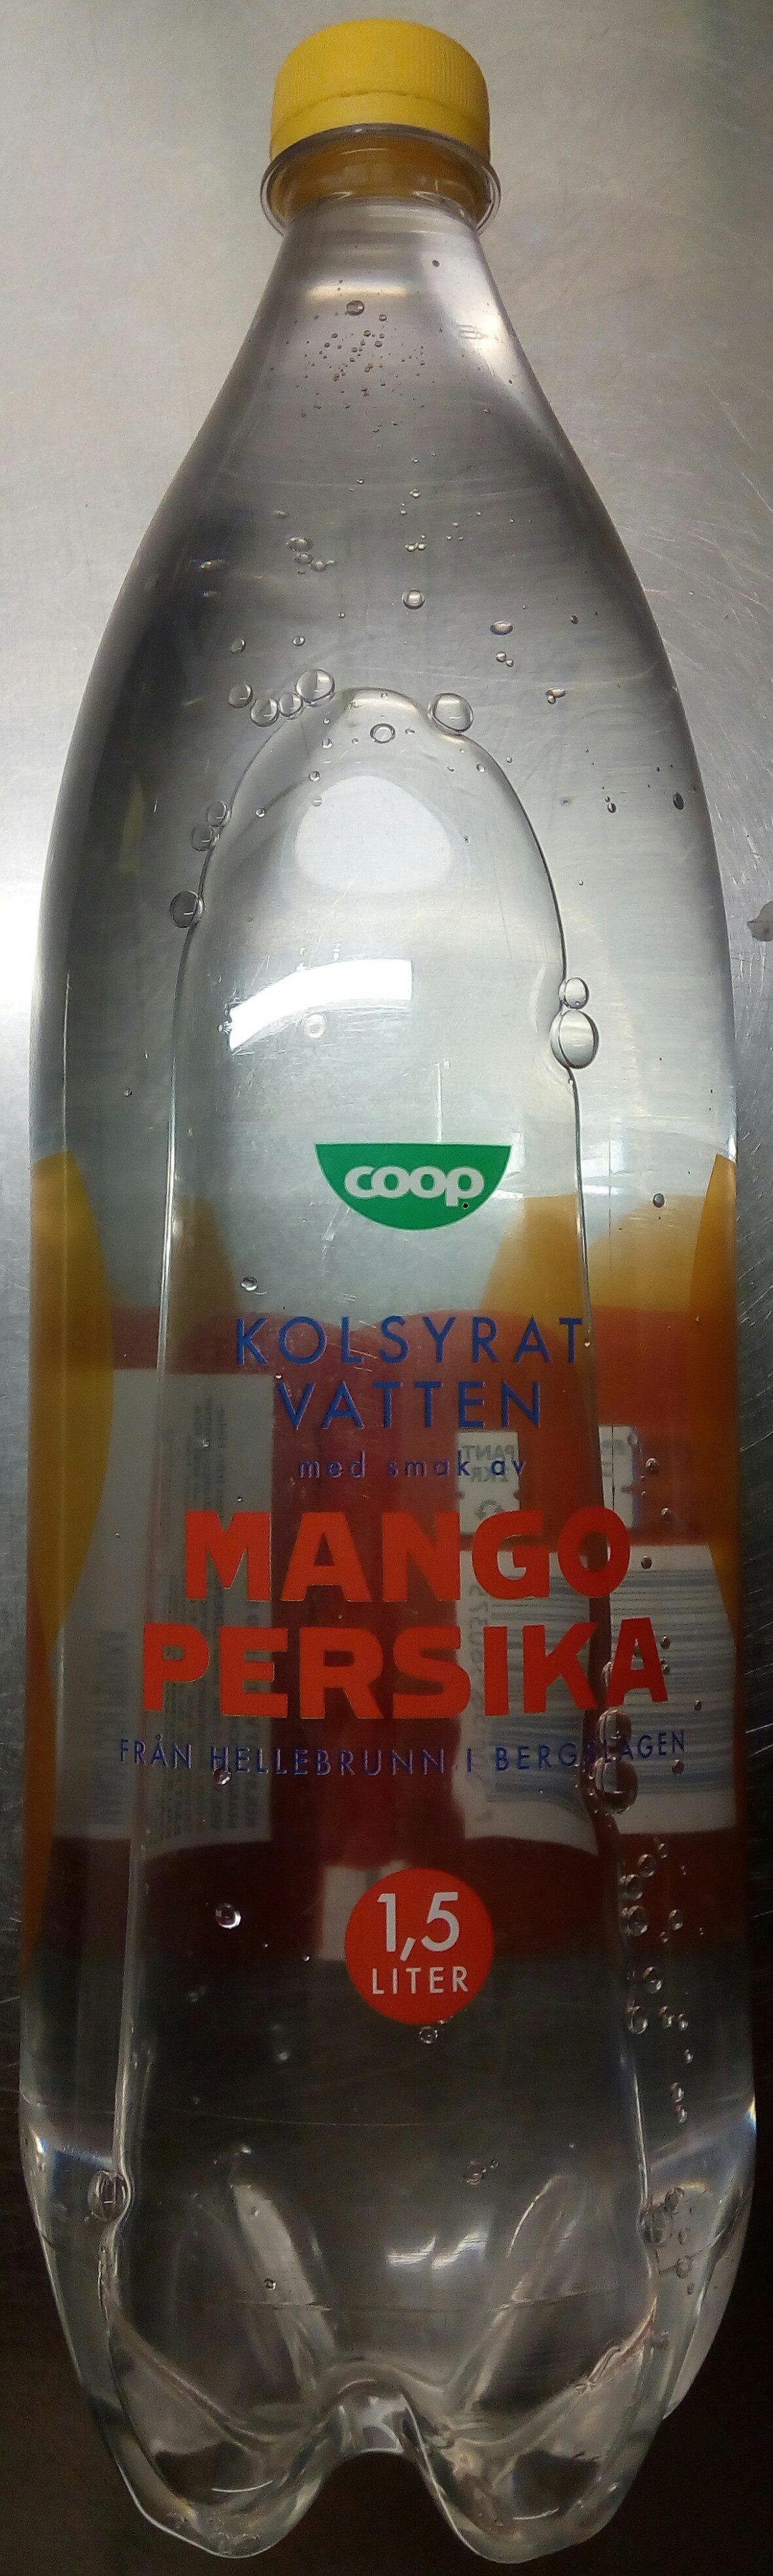 Coop Kolsyrat vatten med smak av Mango och Persika - Produkt - sv